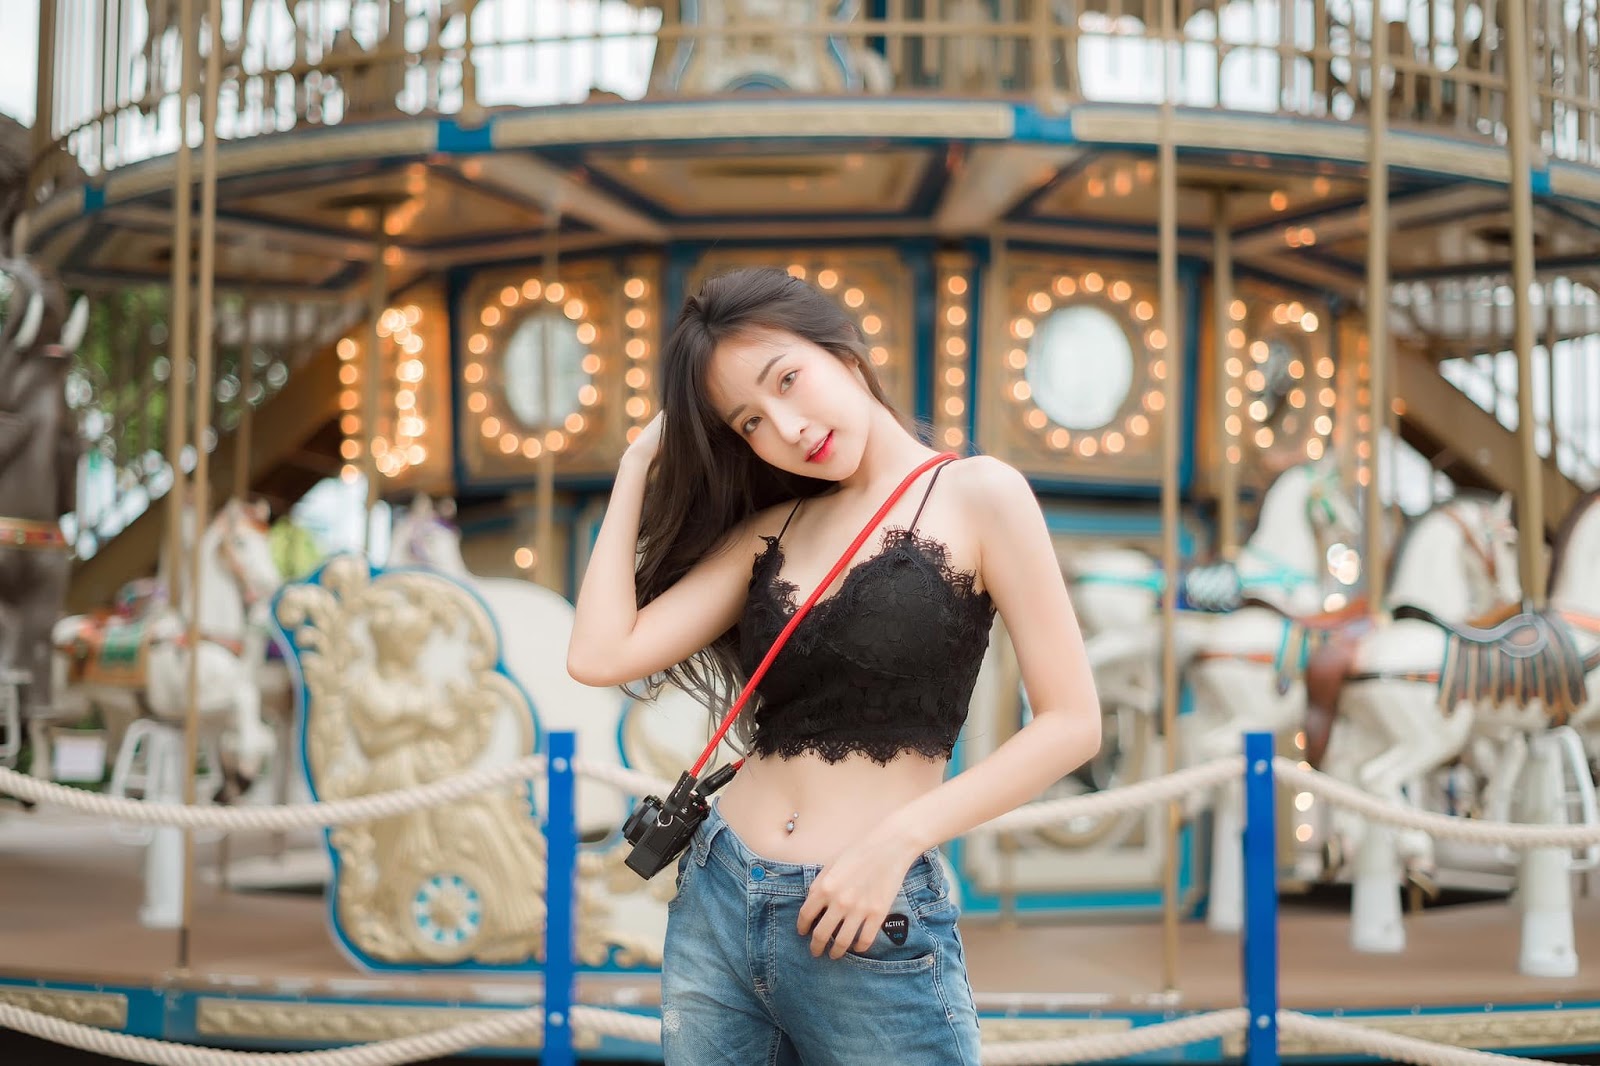 Thailand Hot Girl - Thanyarat Charoenpornkittada - My Memory Childhood Park - TruePic.net - Picture 23